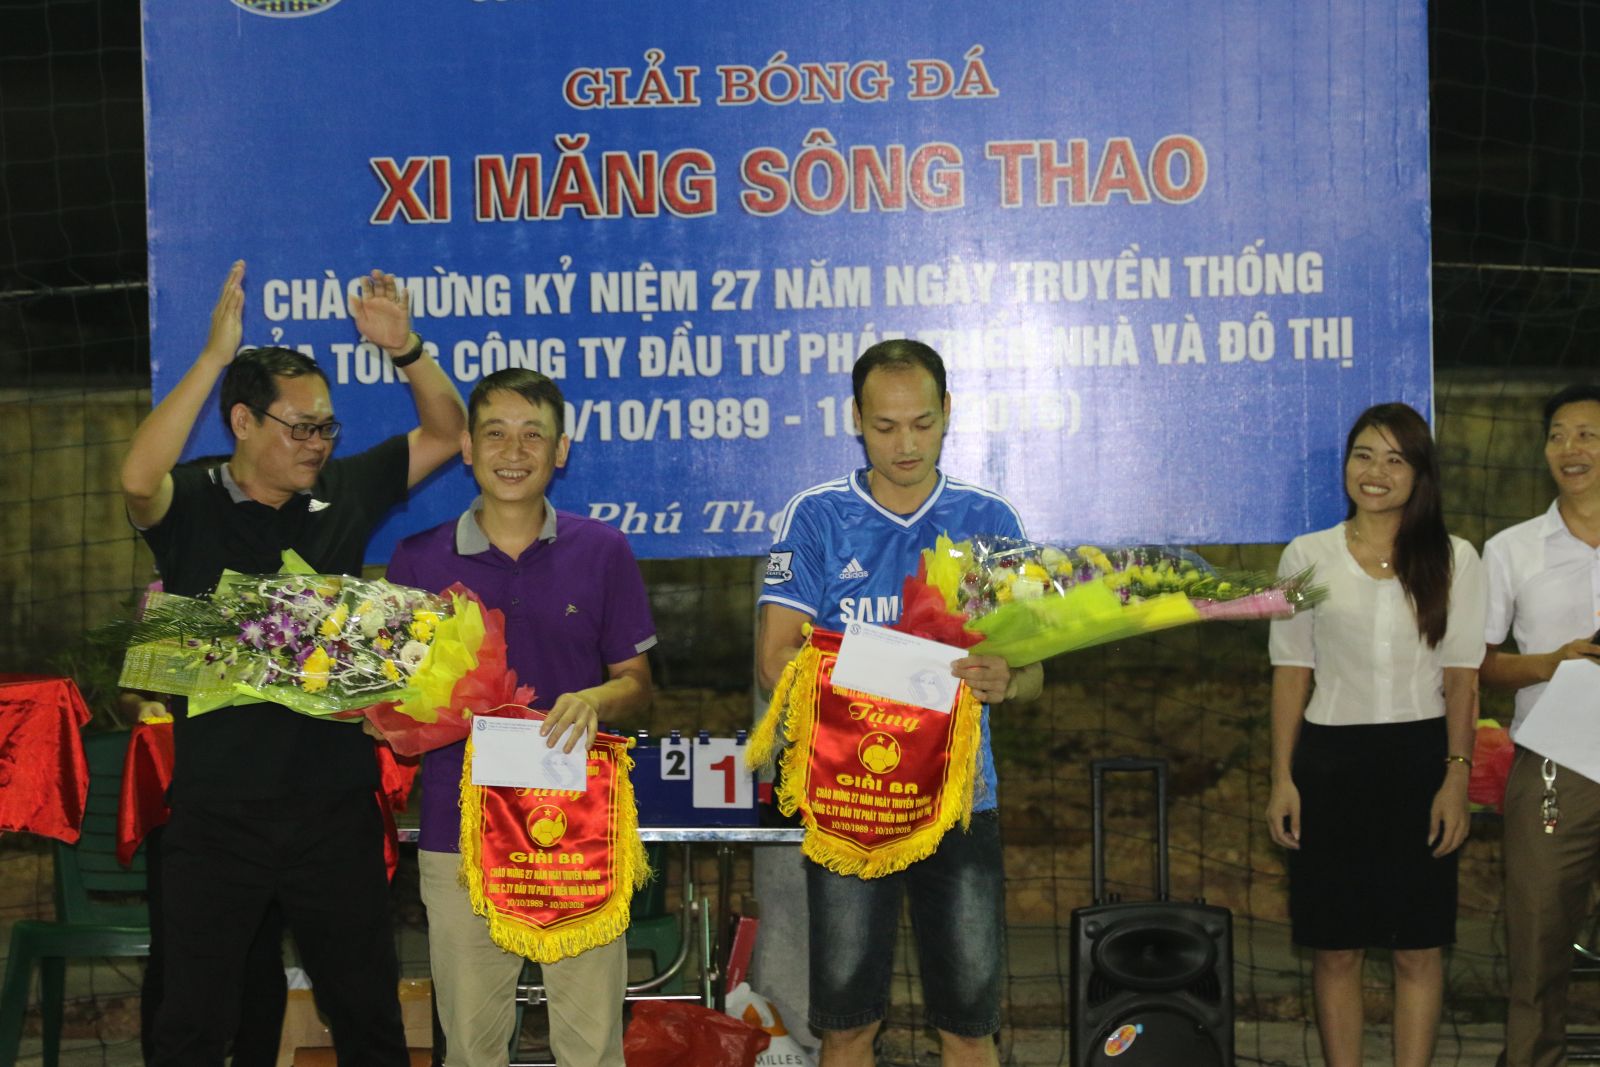 Đ/c Nguyễn Tiến Thuật, Bí thư Đoàn thanh niên trao giải cho Đội đạt giải Ba